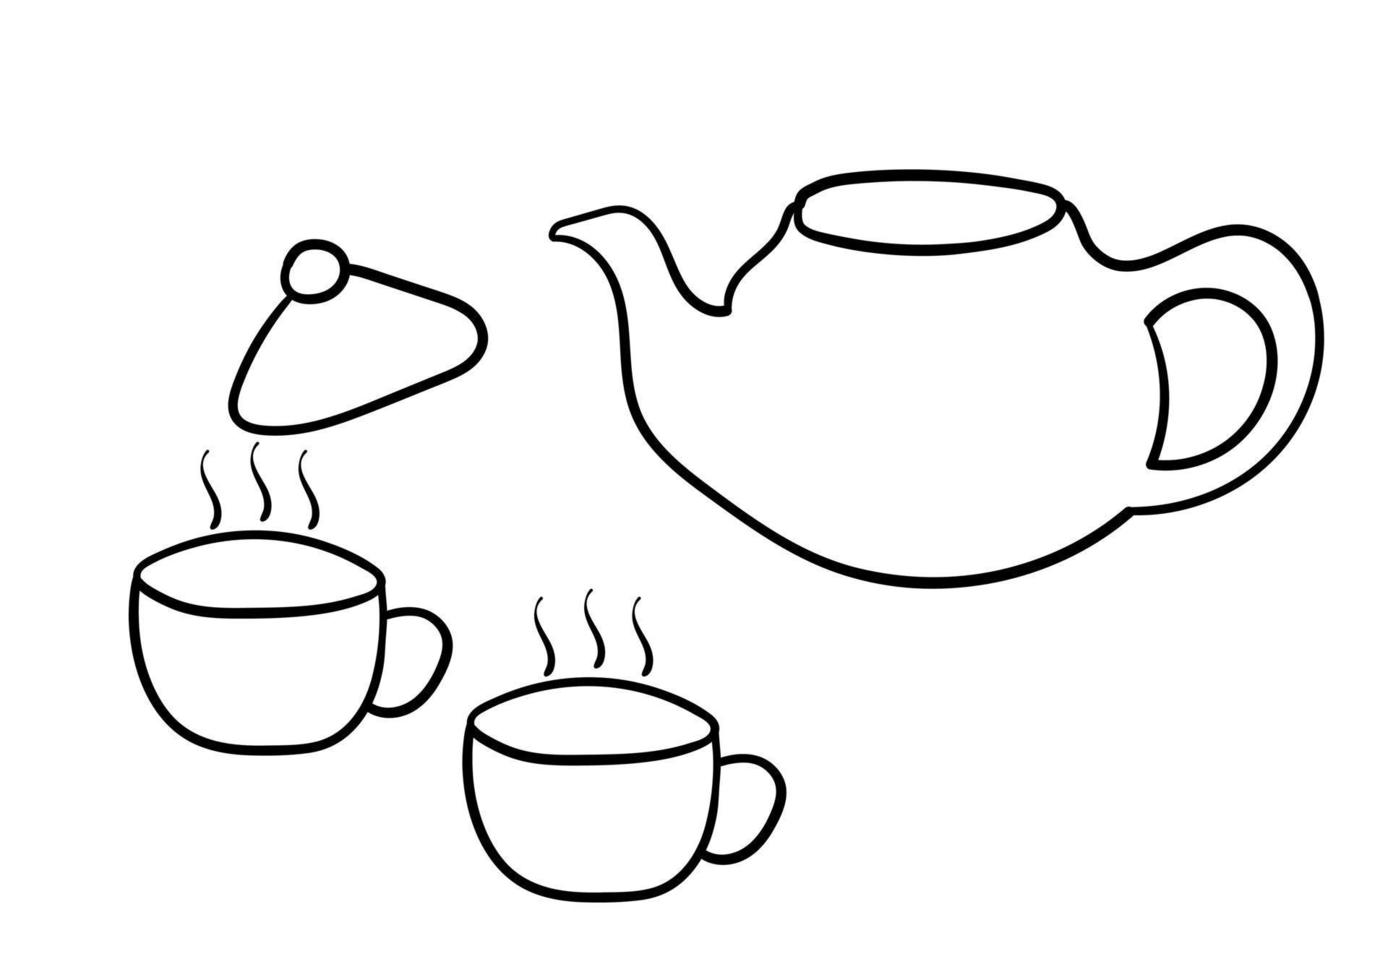 met de hand getekende theepot en een kopje over het thema thee drinken vector